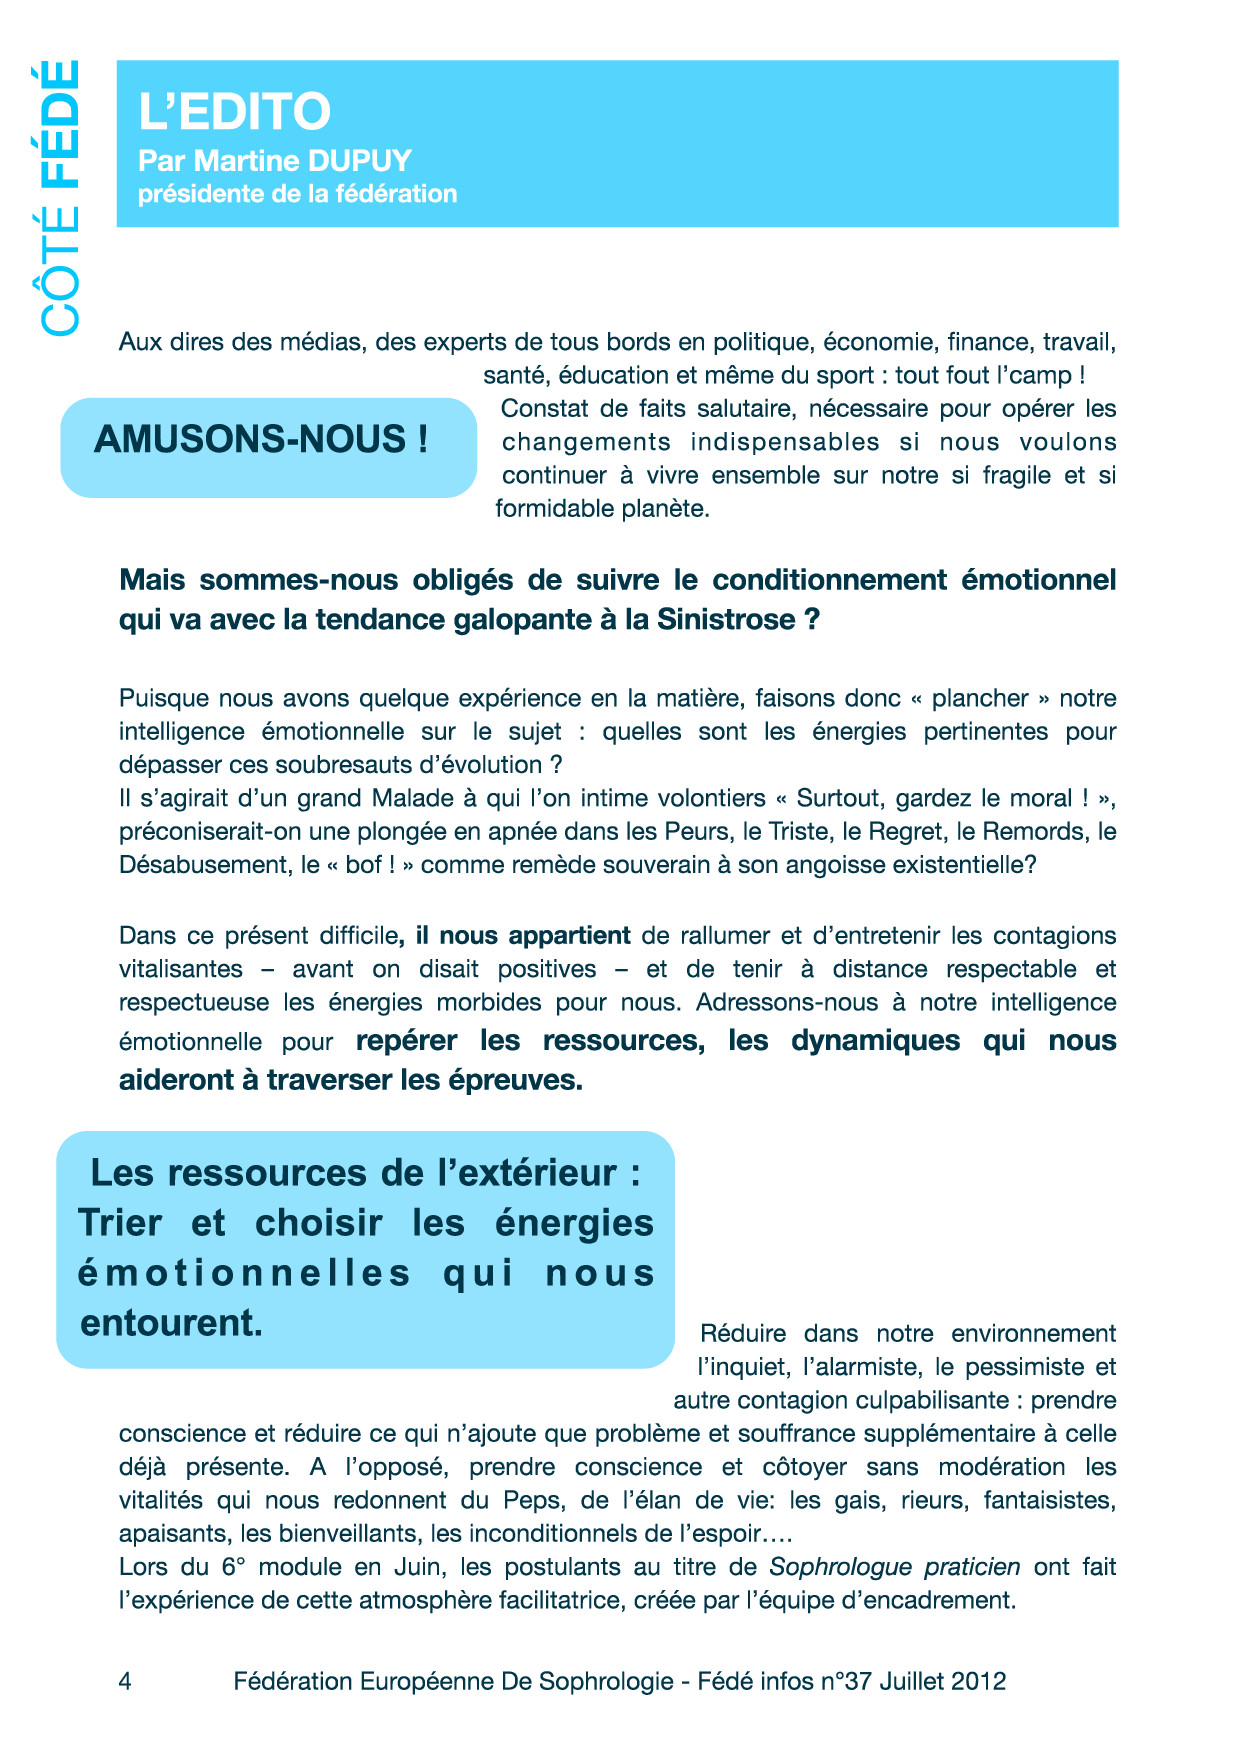 Editorial du Fédé Infos N°37